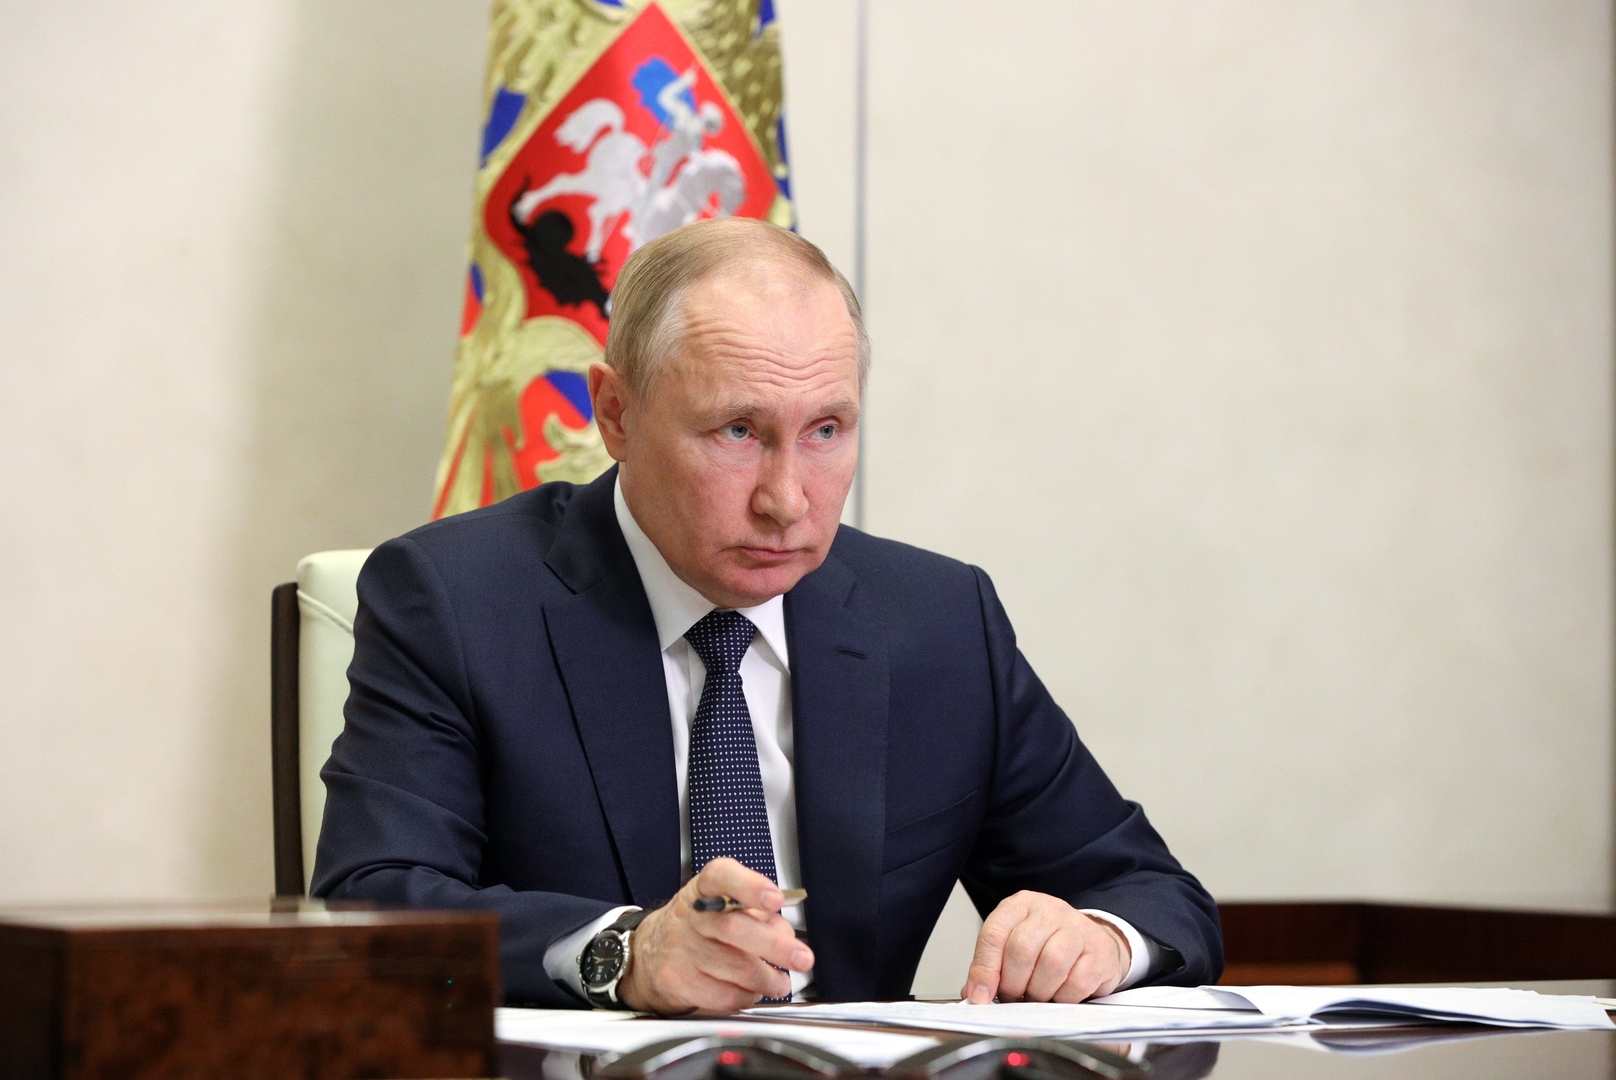 بوتين: هناك اختلافات طفيفة بين روسيا وتركيا وإيران حول سوريا